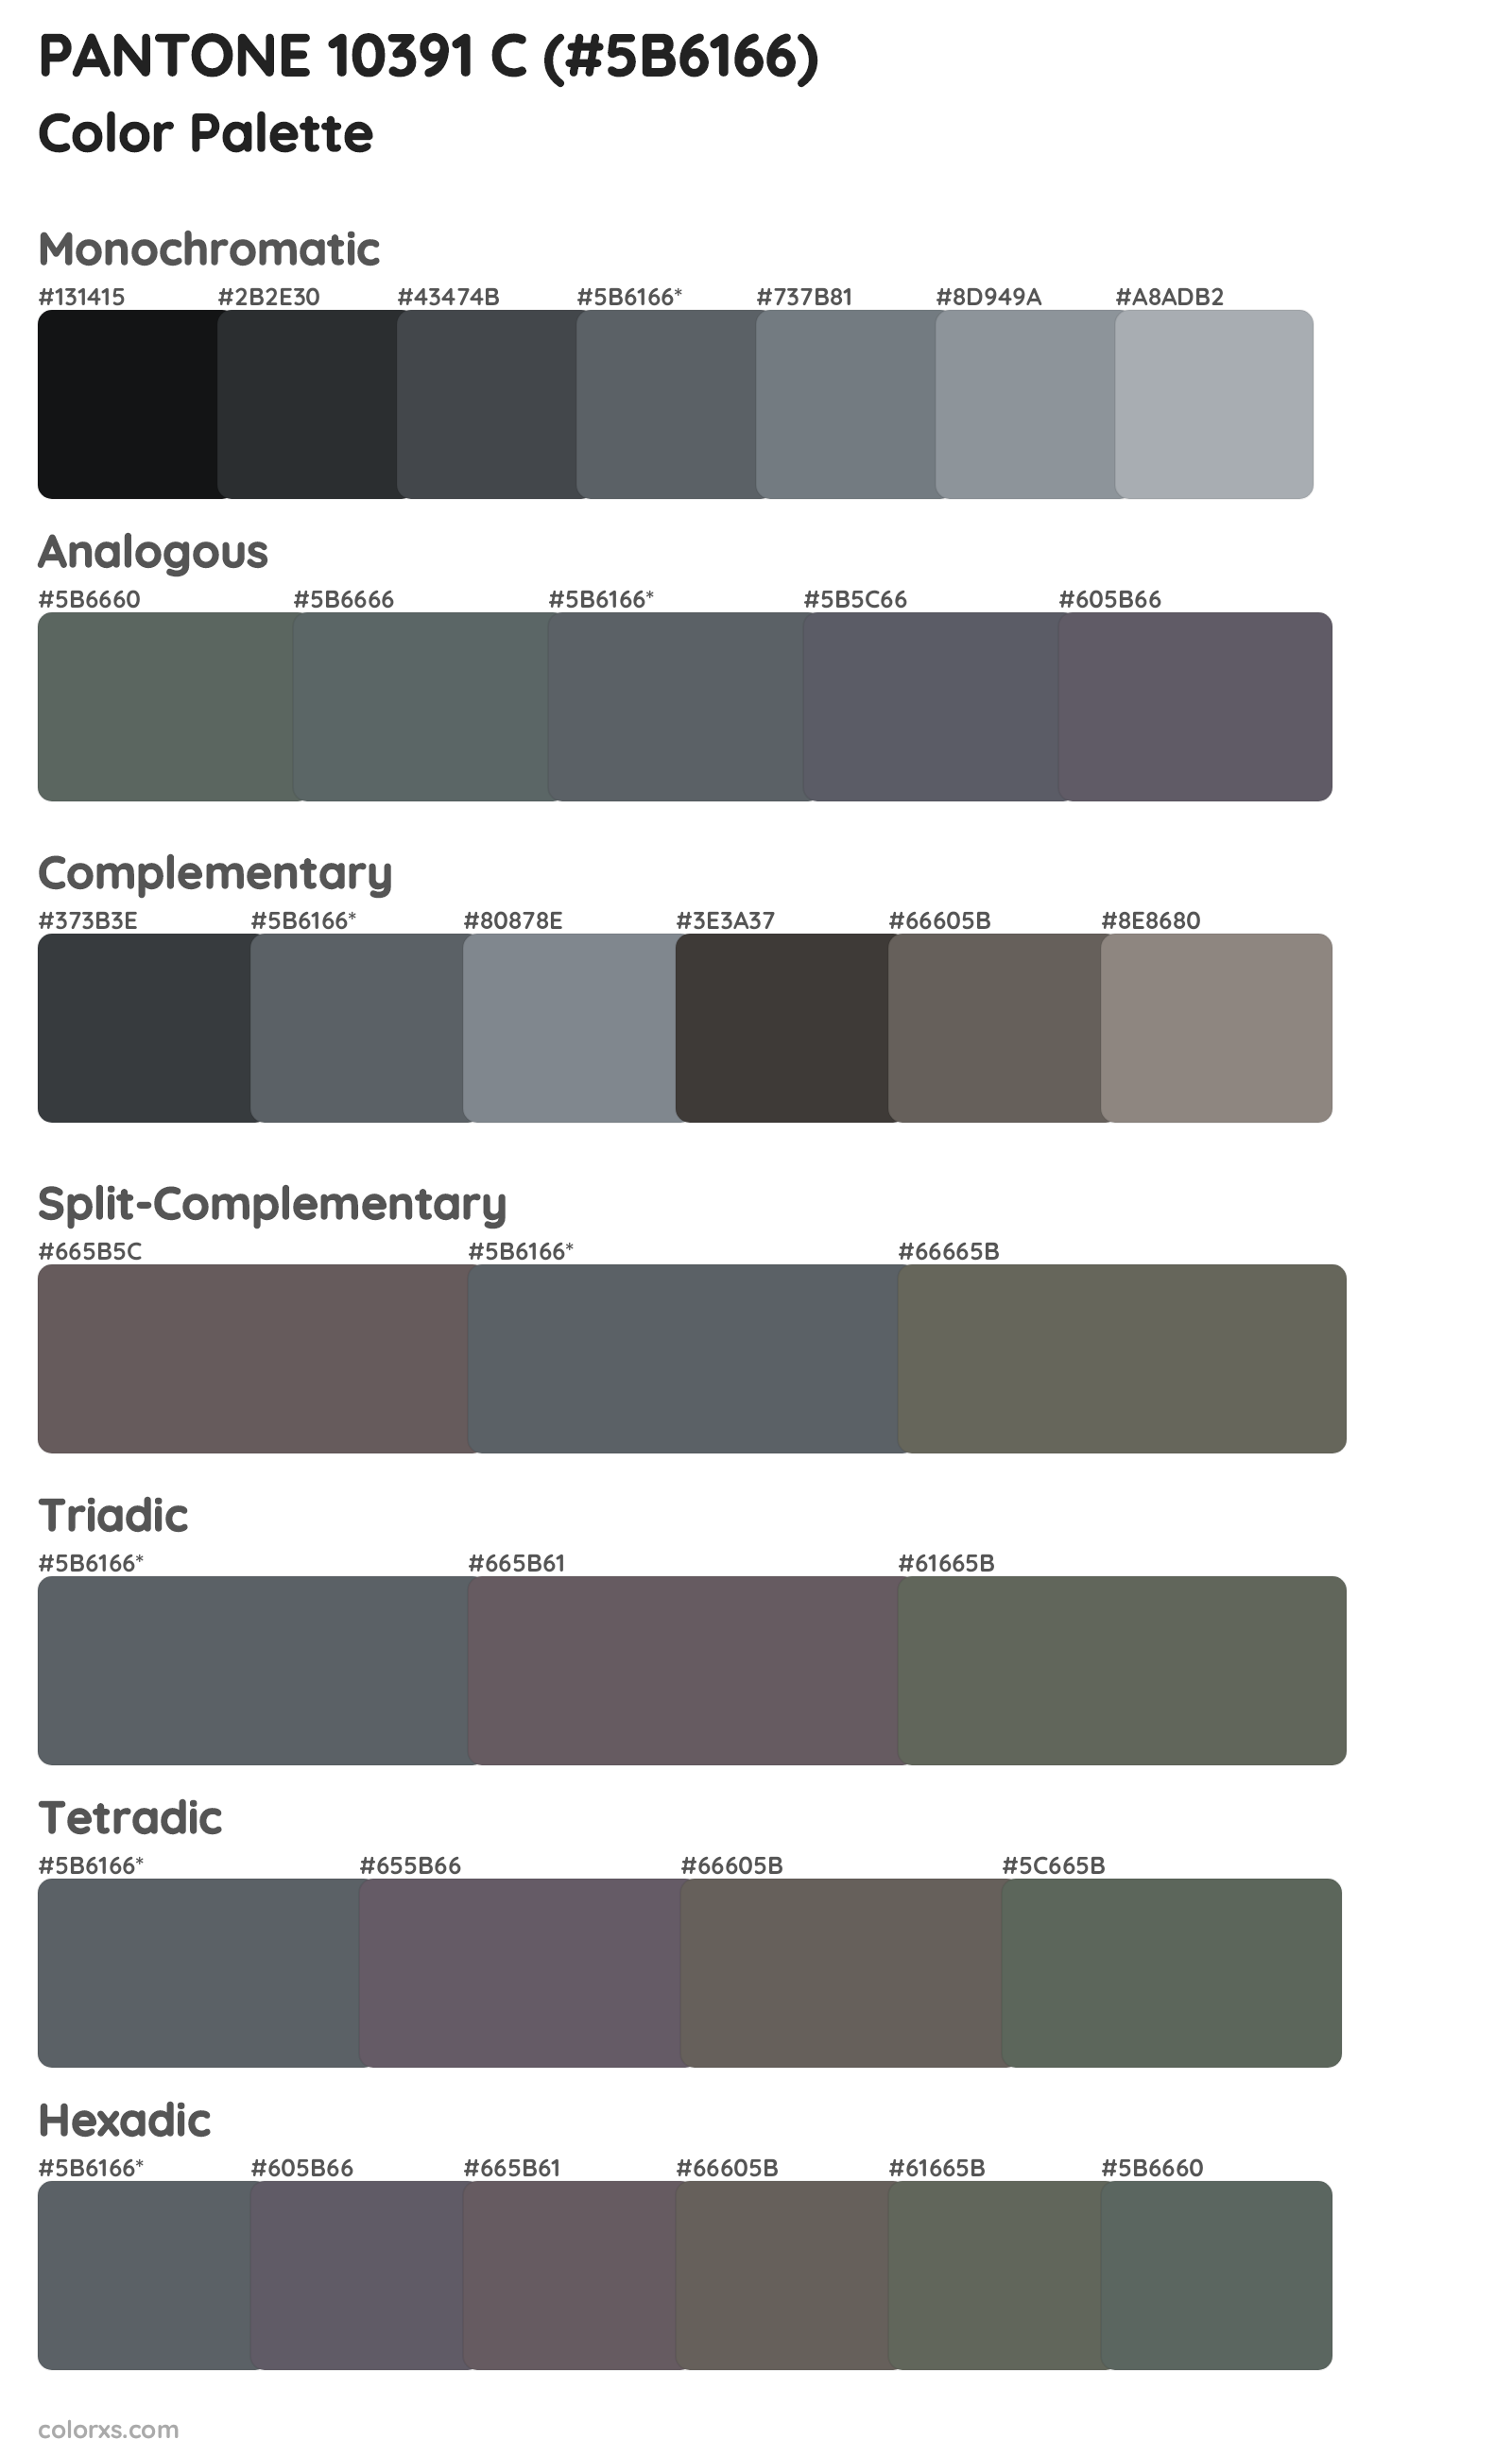 PANTONE 10391 C Color Scheme Palettes